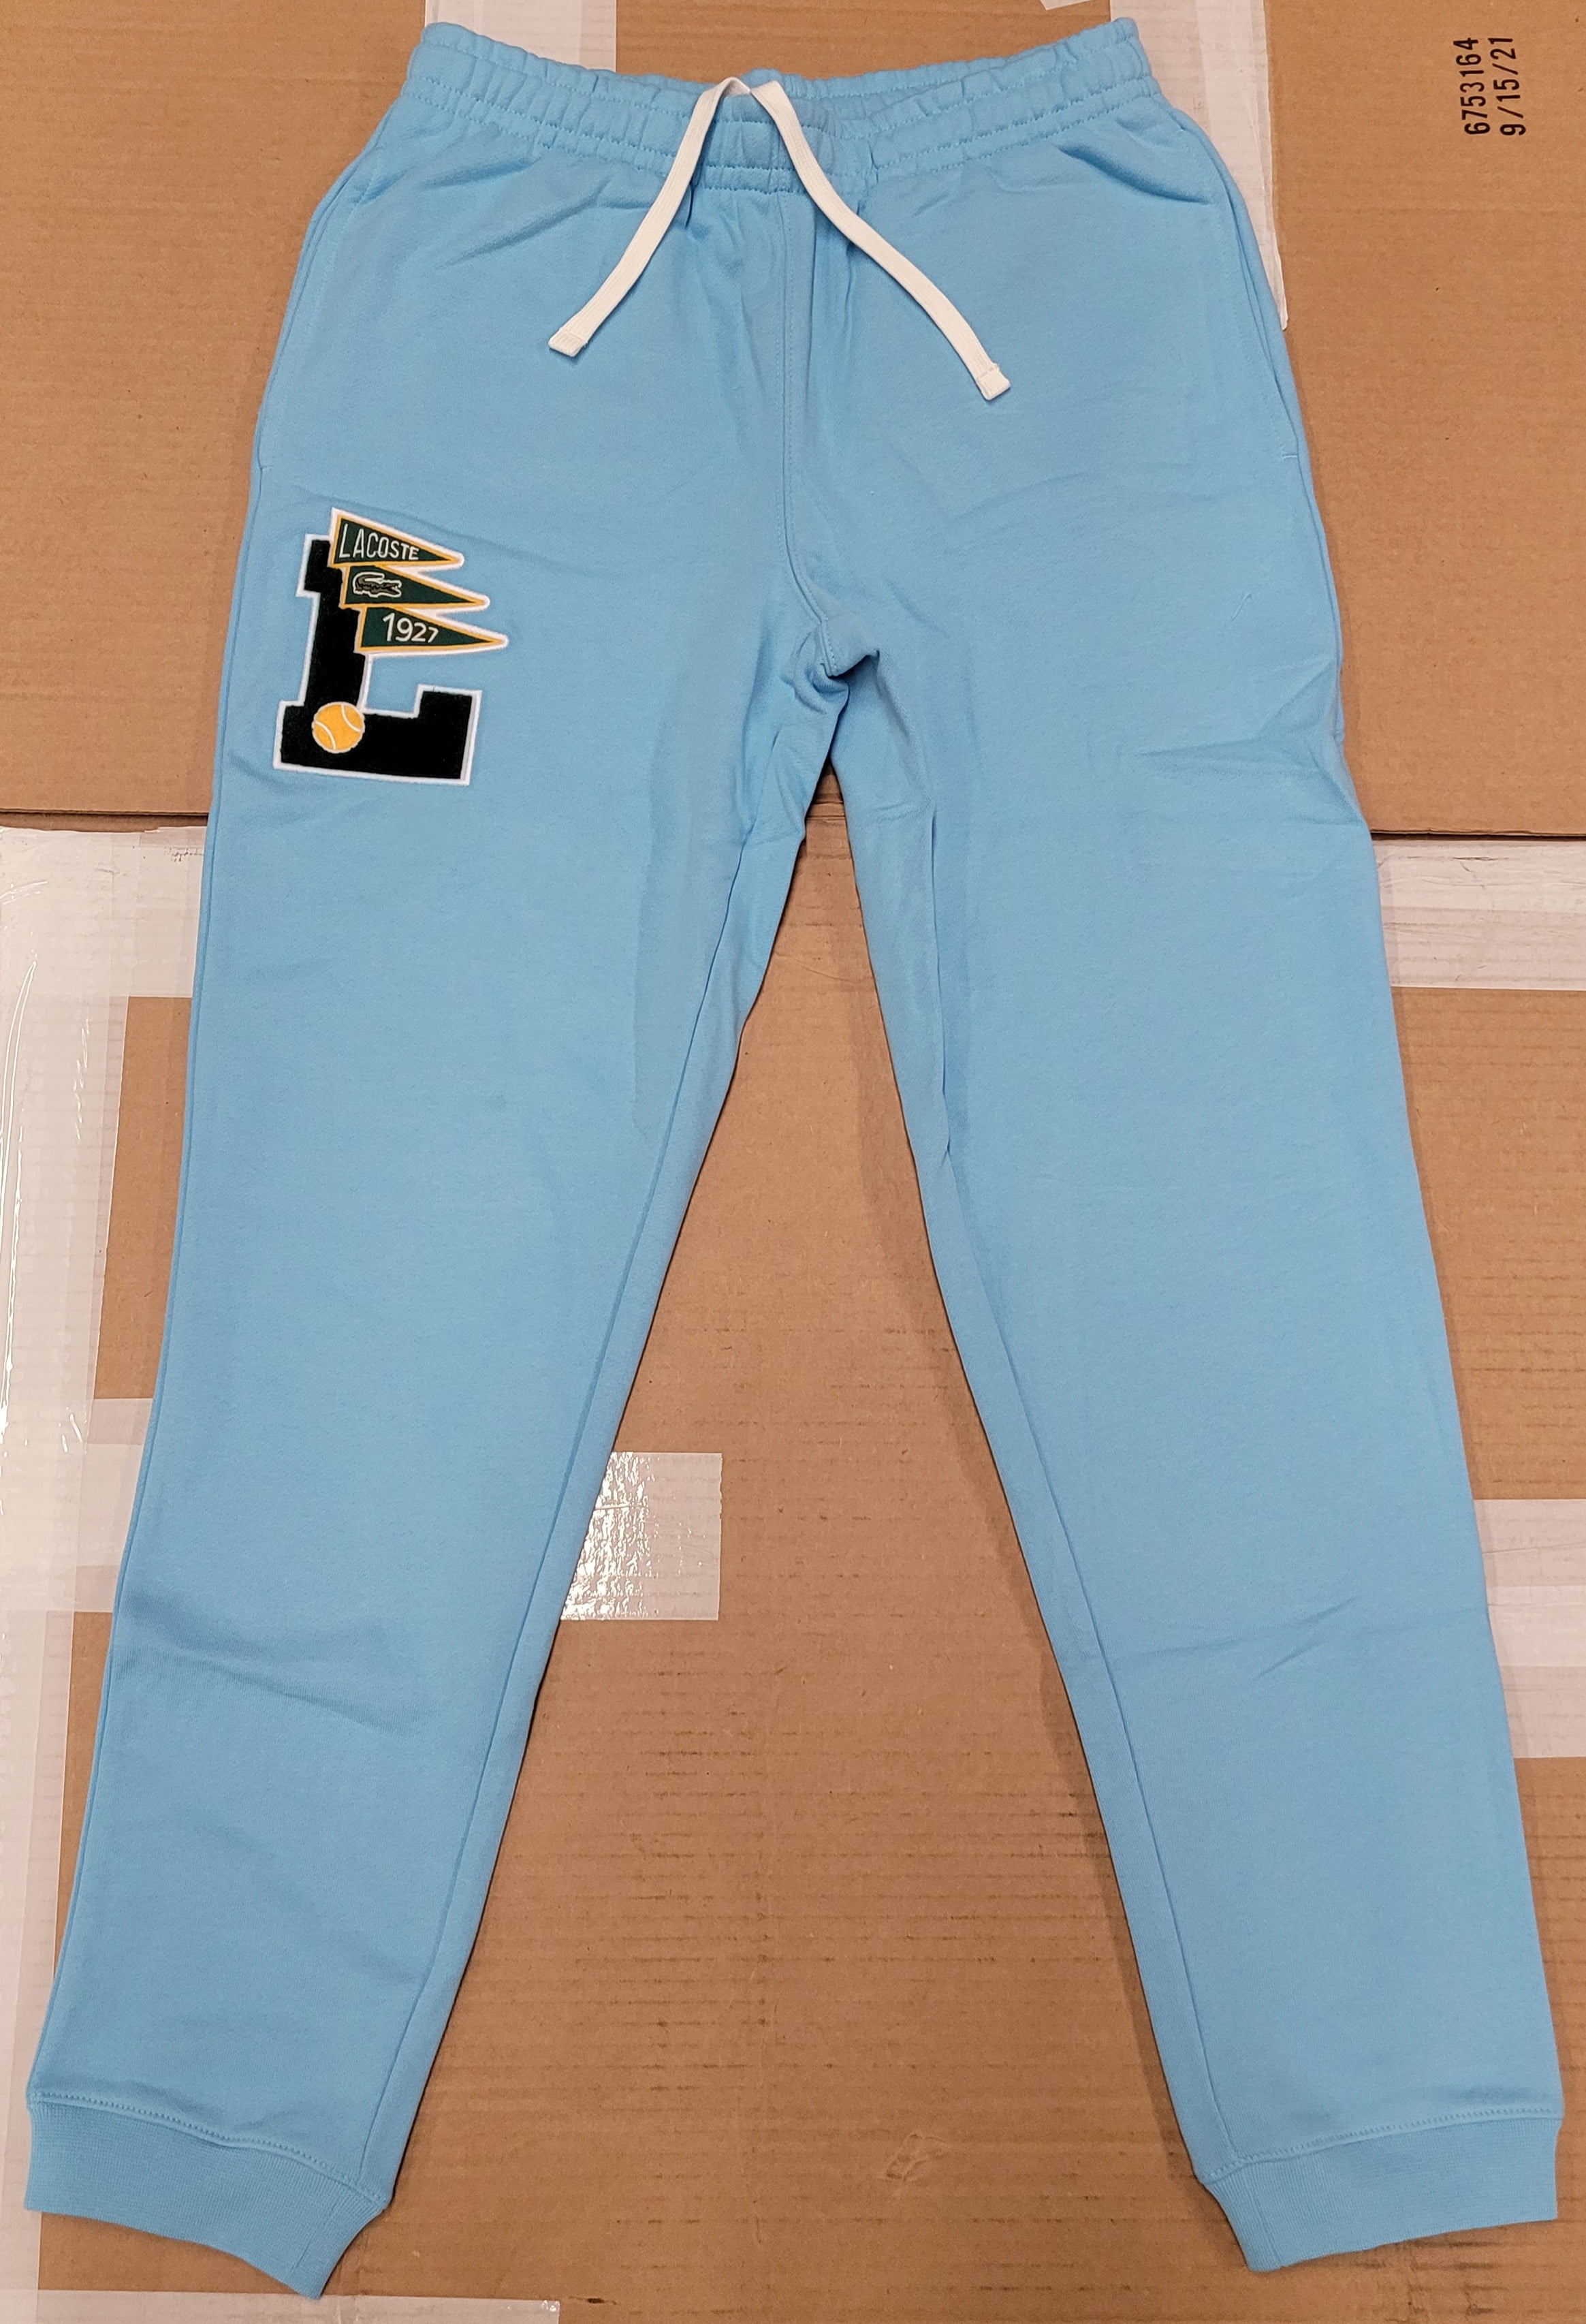 $125 Lacoste Men's Varsity Cotton Joggers Sweatpants, Barbeau Blue, Sz 6-XL - Walmart.com